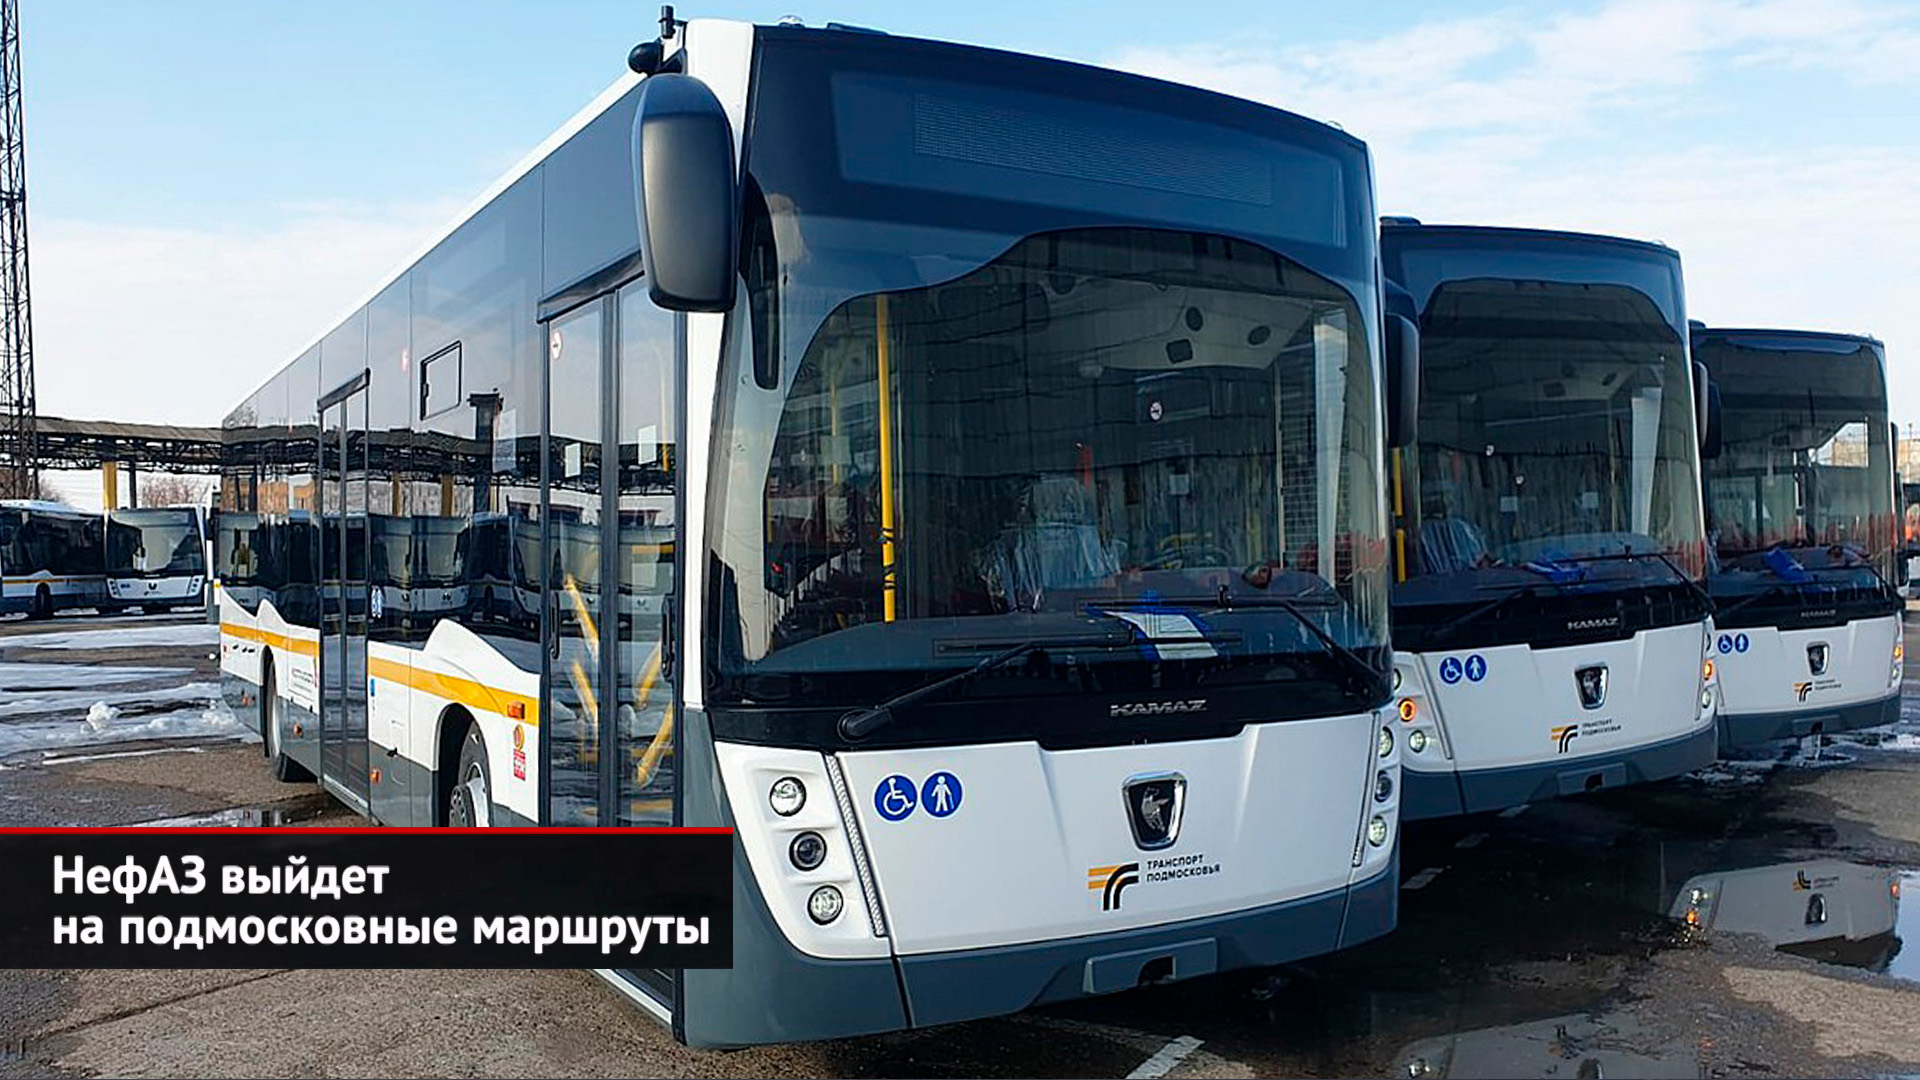 Автобусы — Подмосковью: большие НефАЗы, средние ЛиАЗы и особая ГАЗель City | Новости с колёс №2440